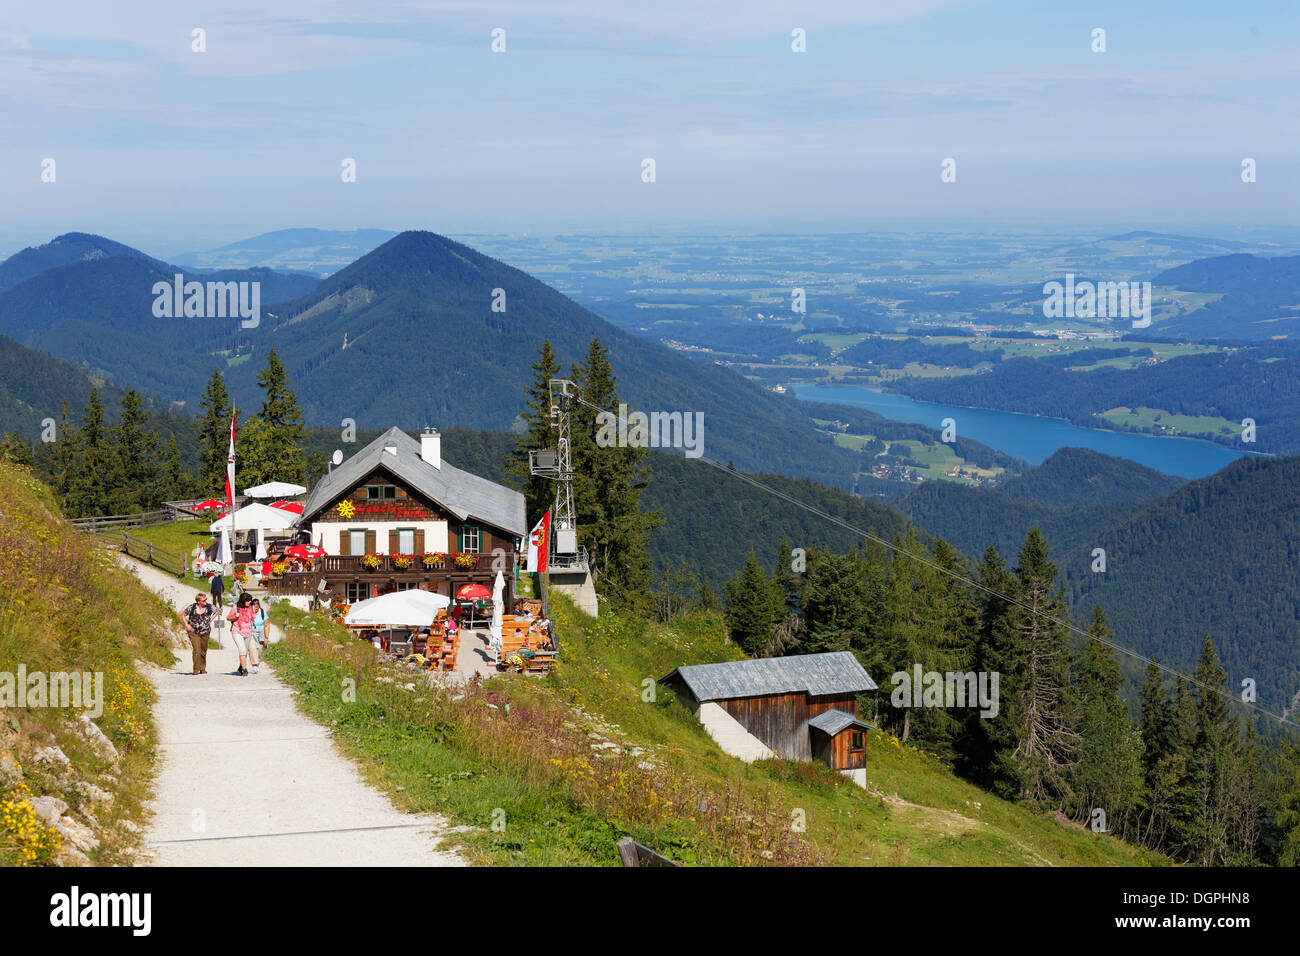 Franzls Hütte am Zwölferhorn Mountainbike, Fuschlsee auf der rechten Seite, Sankt Gilgen, Salzkammergut, Salzburger Land, Österreich Stockfoto